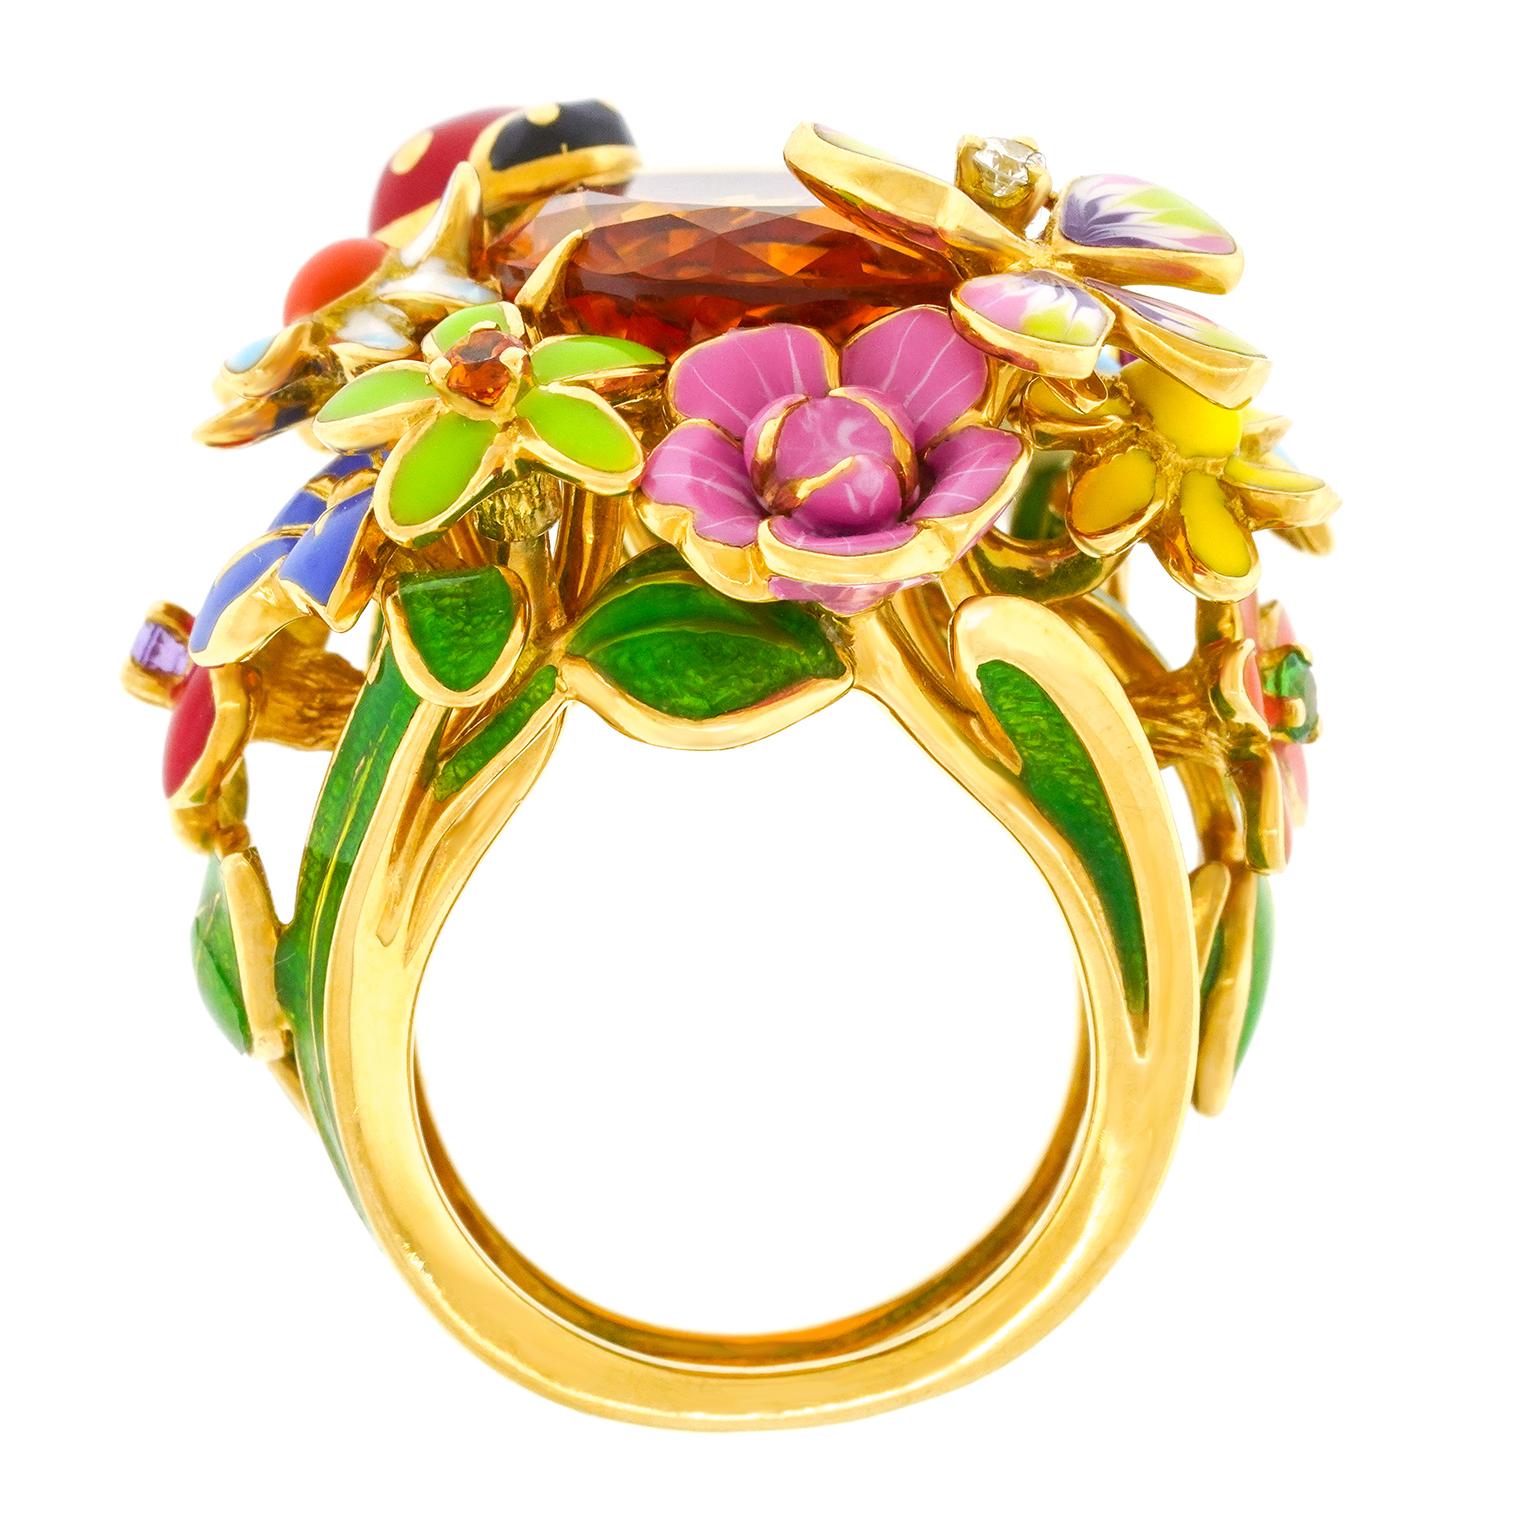 Diorette Ring by Victorie De Castellane for Dior 6